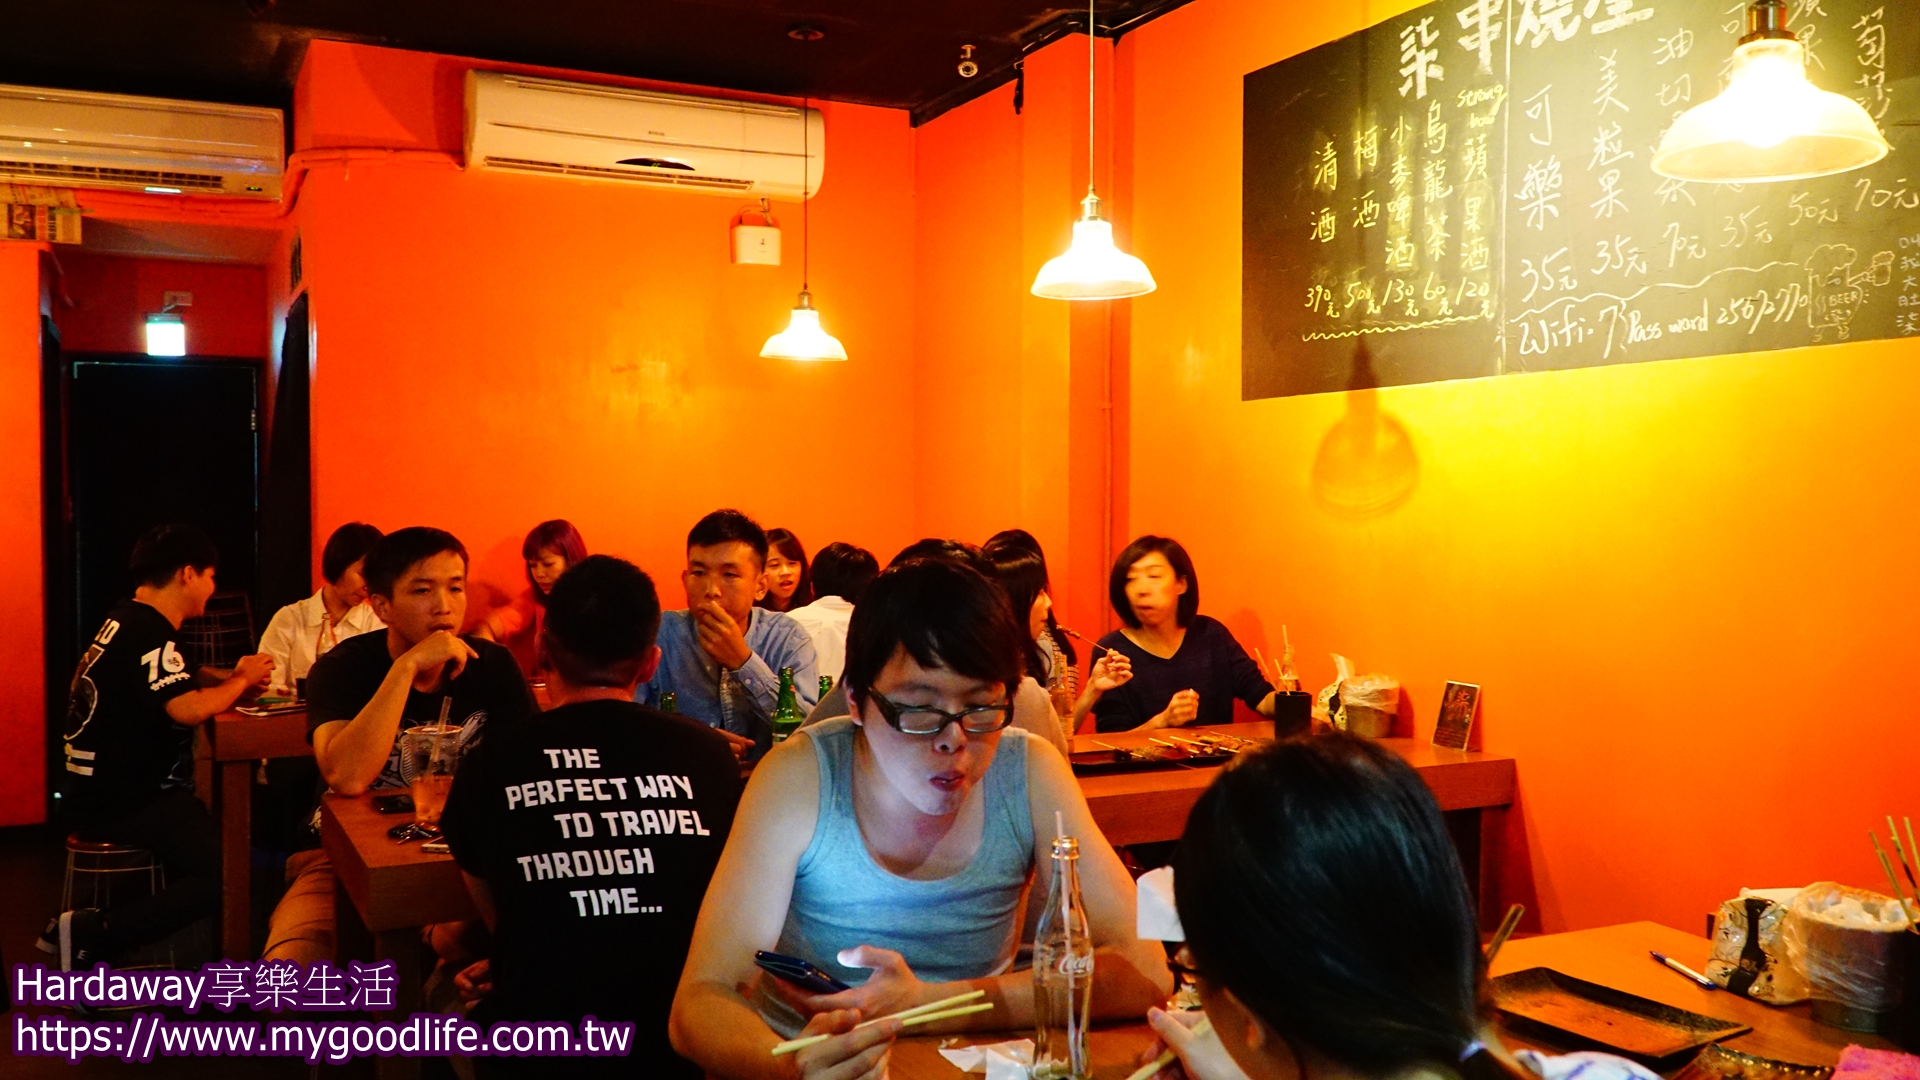 食尚玩家推薦台北市燒烤店